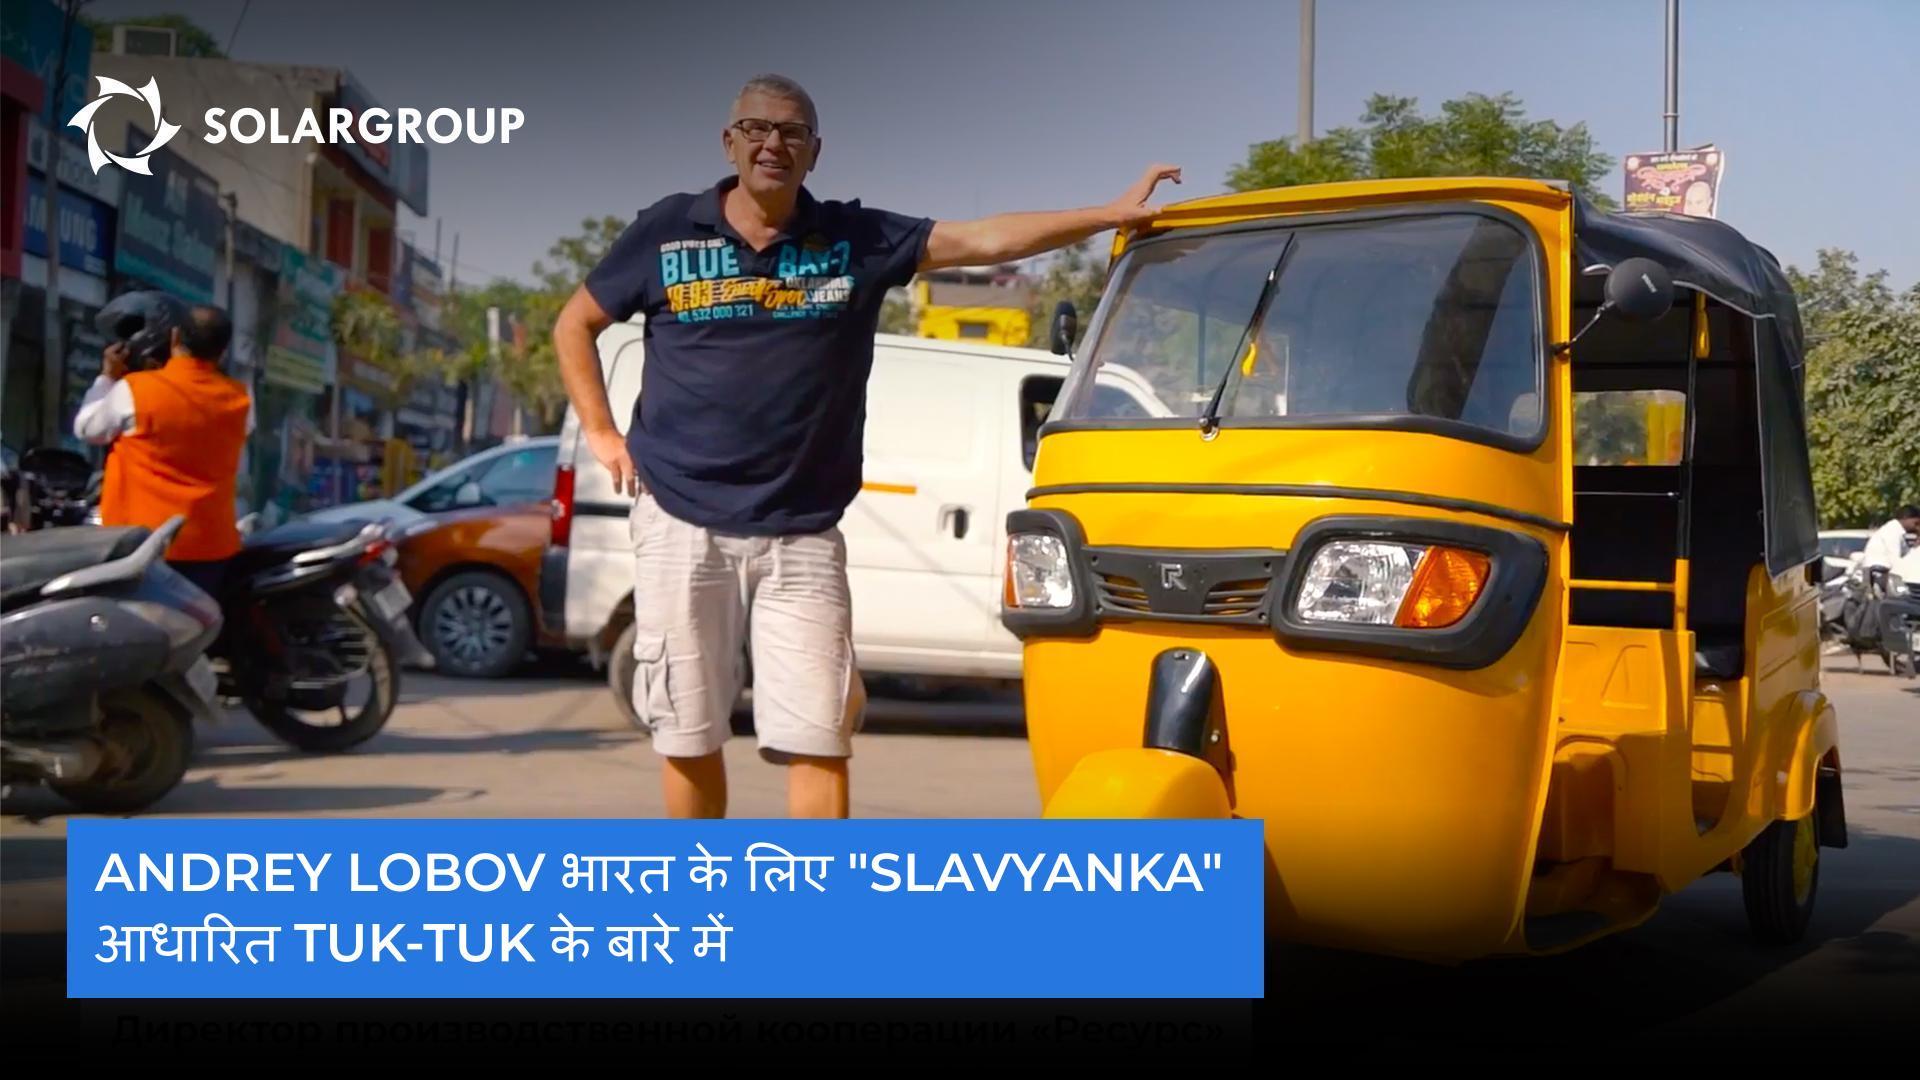 भारत के लिए tuk-tuk के बारे में Andrey Lobov ने कहा, "Slavyanka" तकनीक पर भरोसा करने वाली इलेक्ट्रिक मोटर्स की यहां मांग होगी।